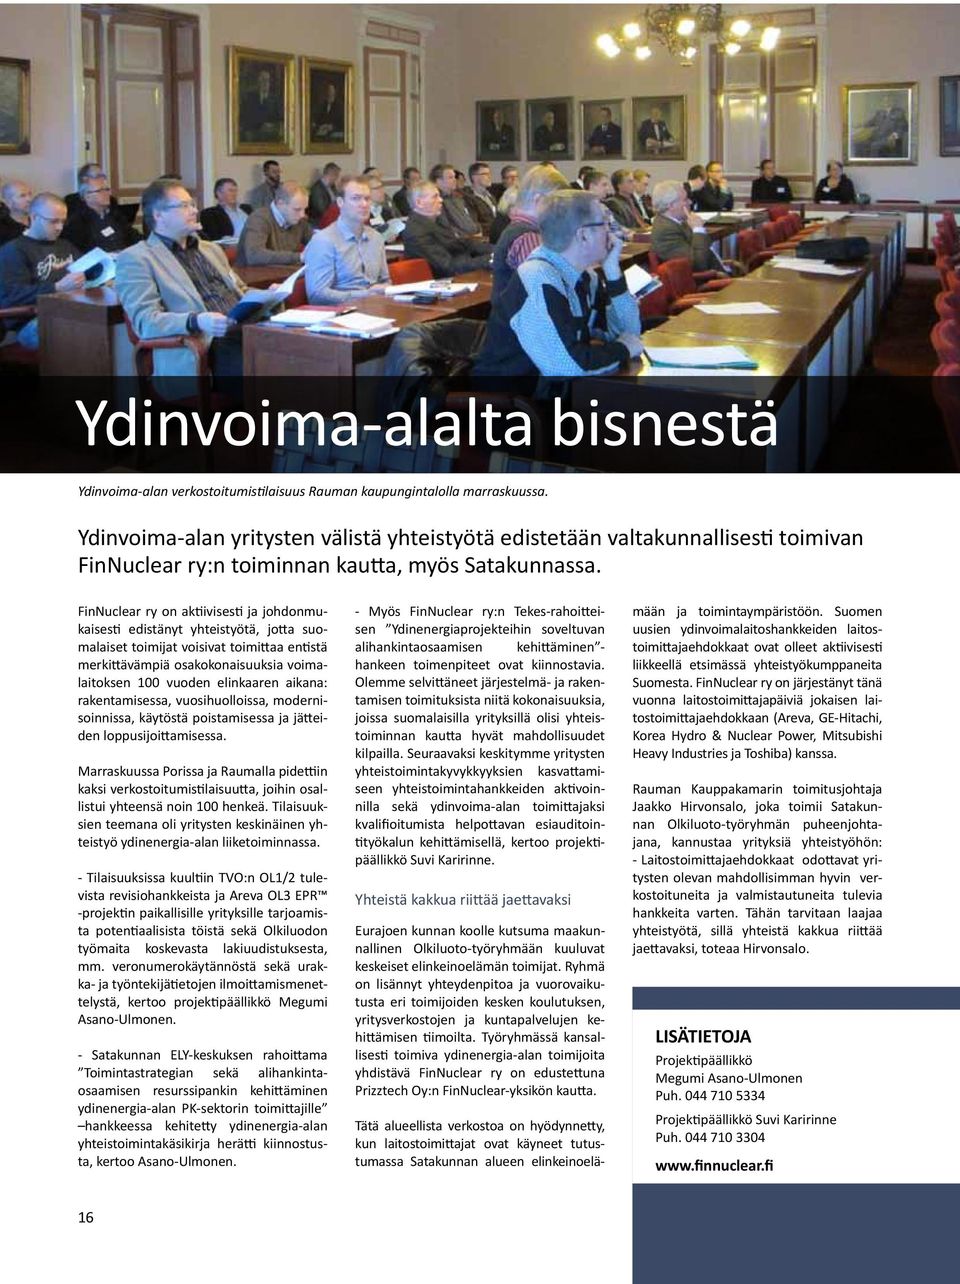 FinNuclear ry on aktiivisesti ja johdonmukaisesti edistänyt yhteistyötä, jotta suomalaiset toimijat voisivat toimittaa entistä merkittävämpiä osakokonaisuuksia voimalaitoksen 100 vuoden elinkaaren